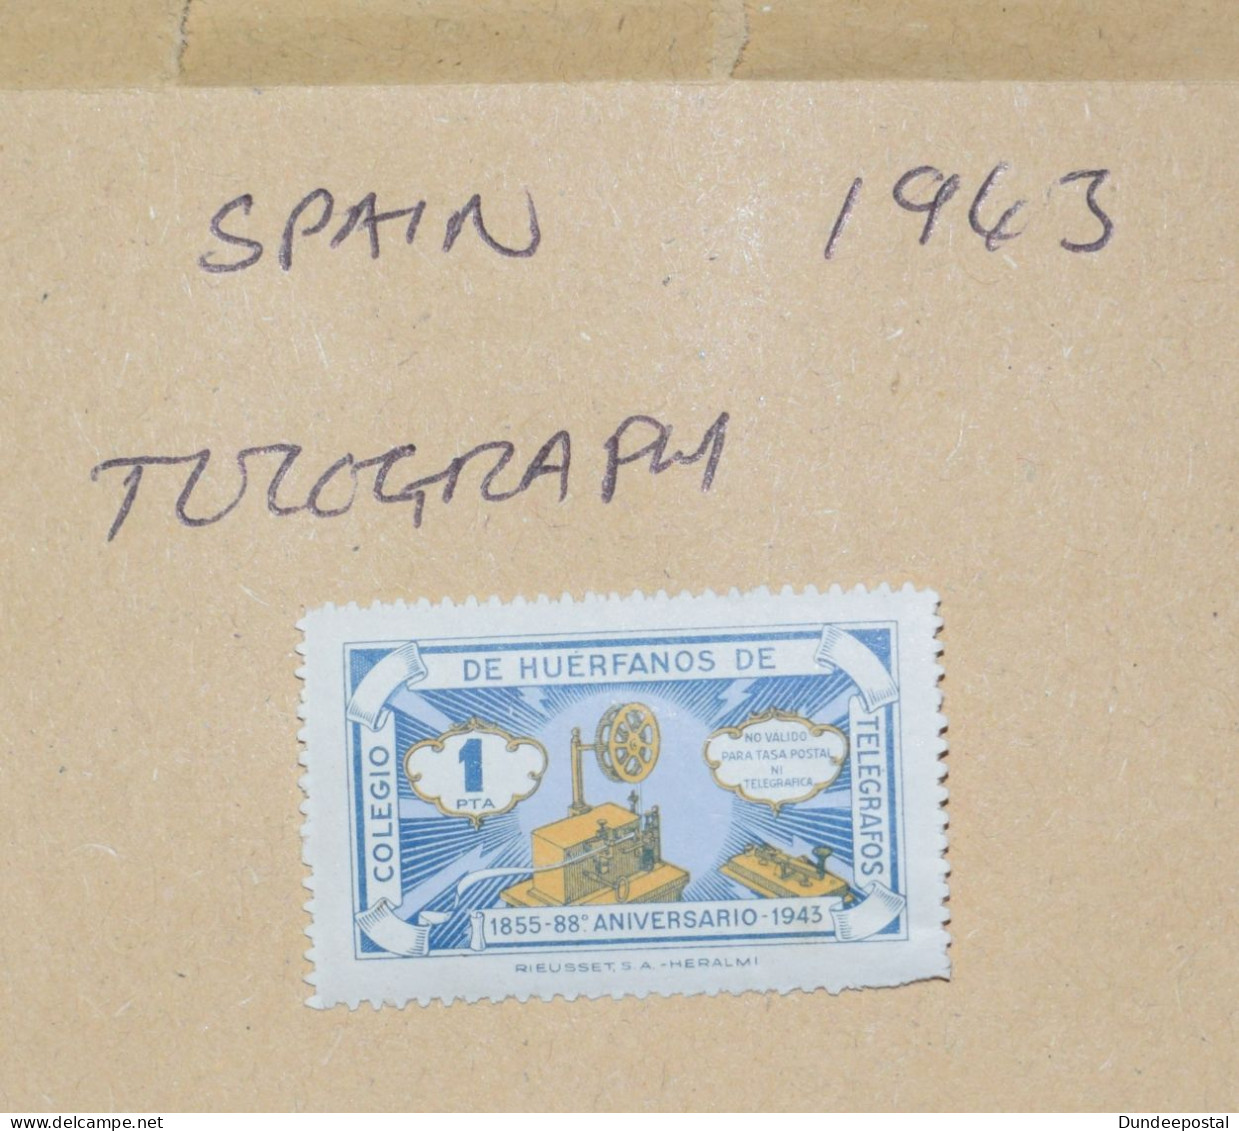 SPAIN  STAMPS  Telegraph 1943 ~~L@@K~~ - Gebraucht